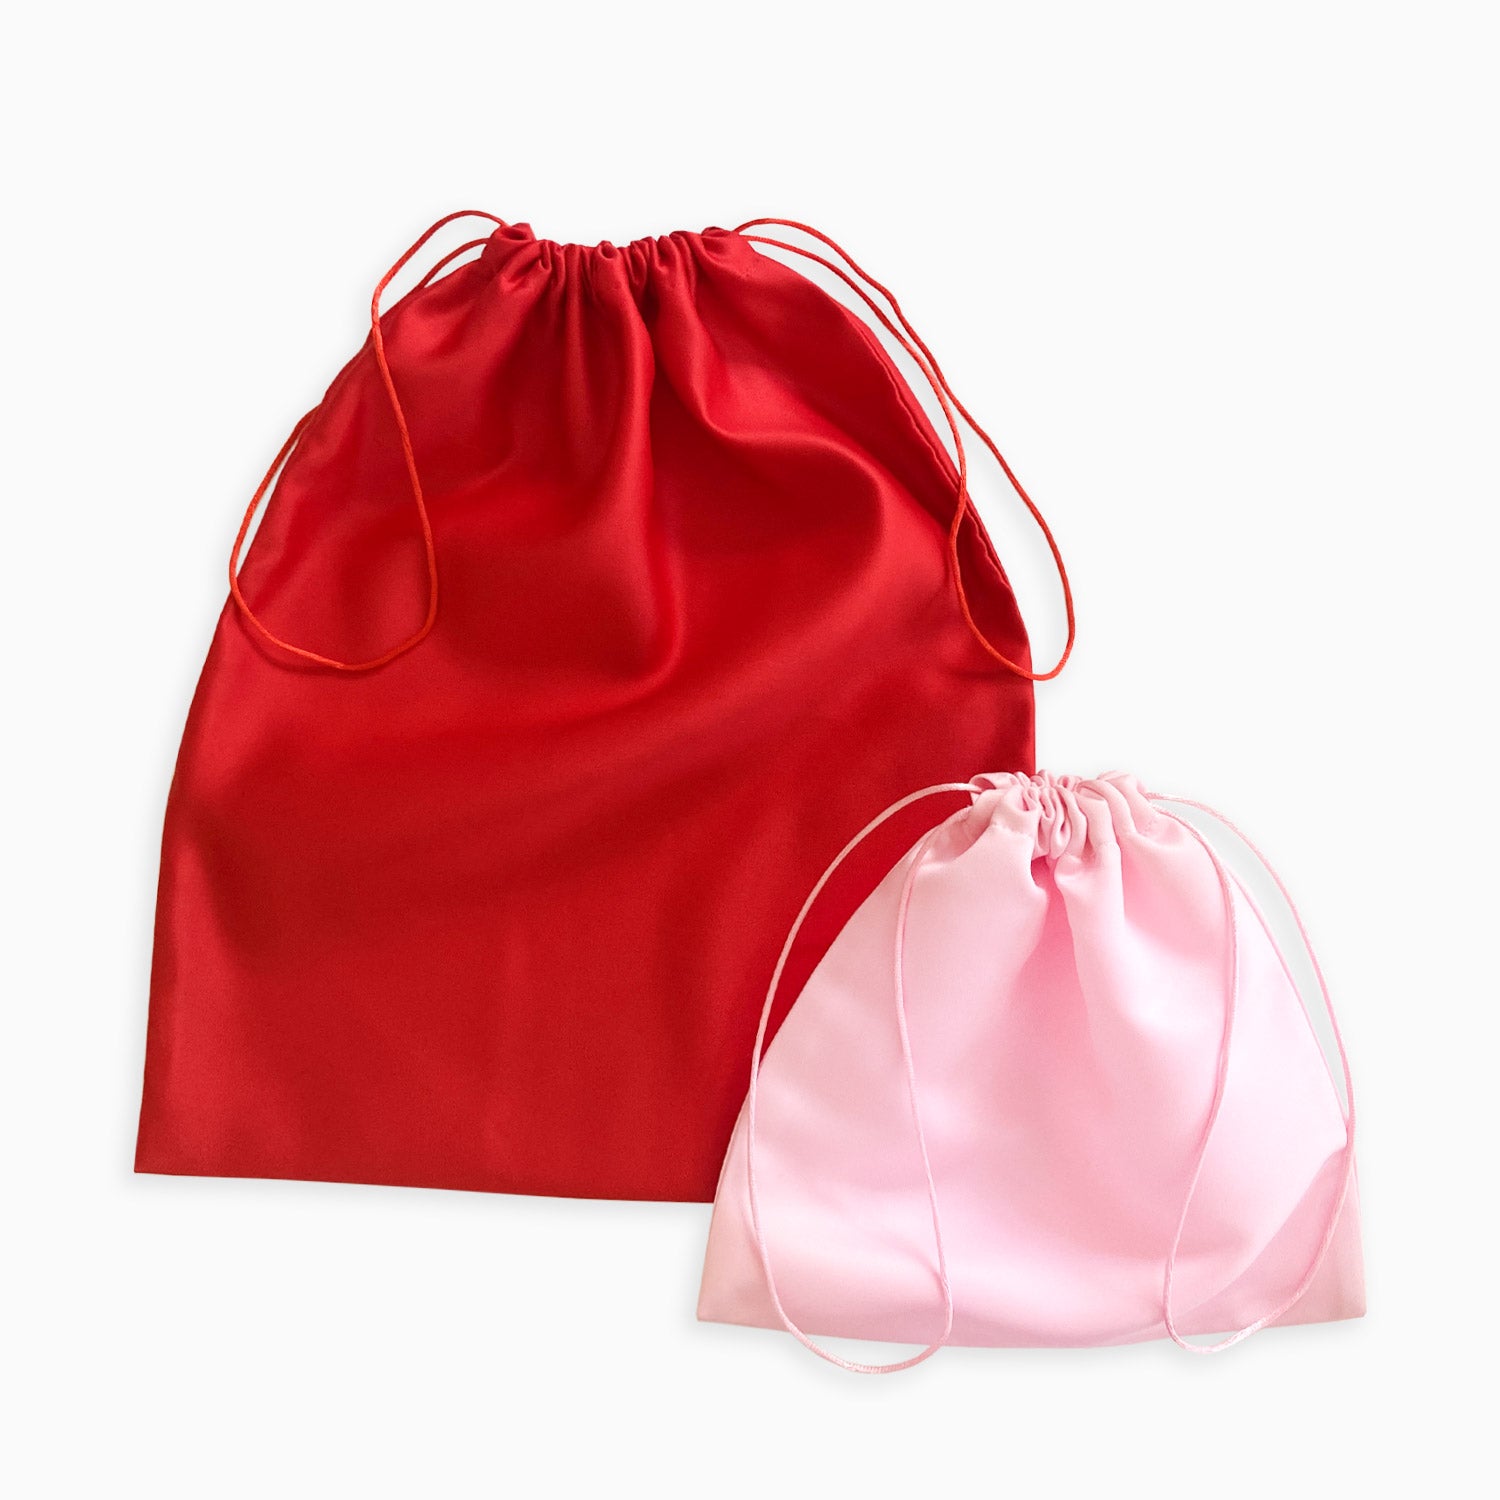 http://mydustbag.com/cdn/shop/products/MYDUSTBAG-blank-dust-bag-satin-silk-pink-red.jpg?v=1633904342